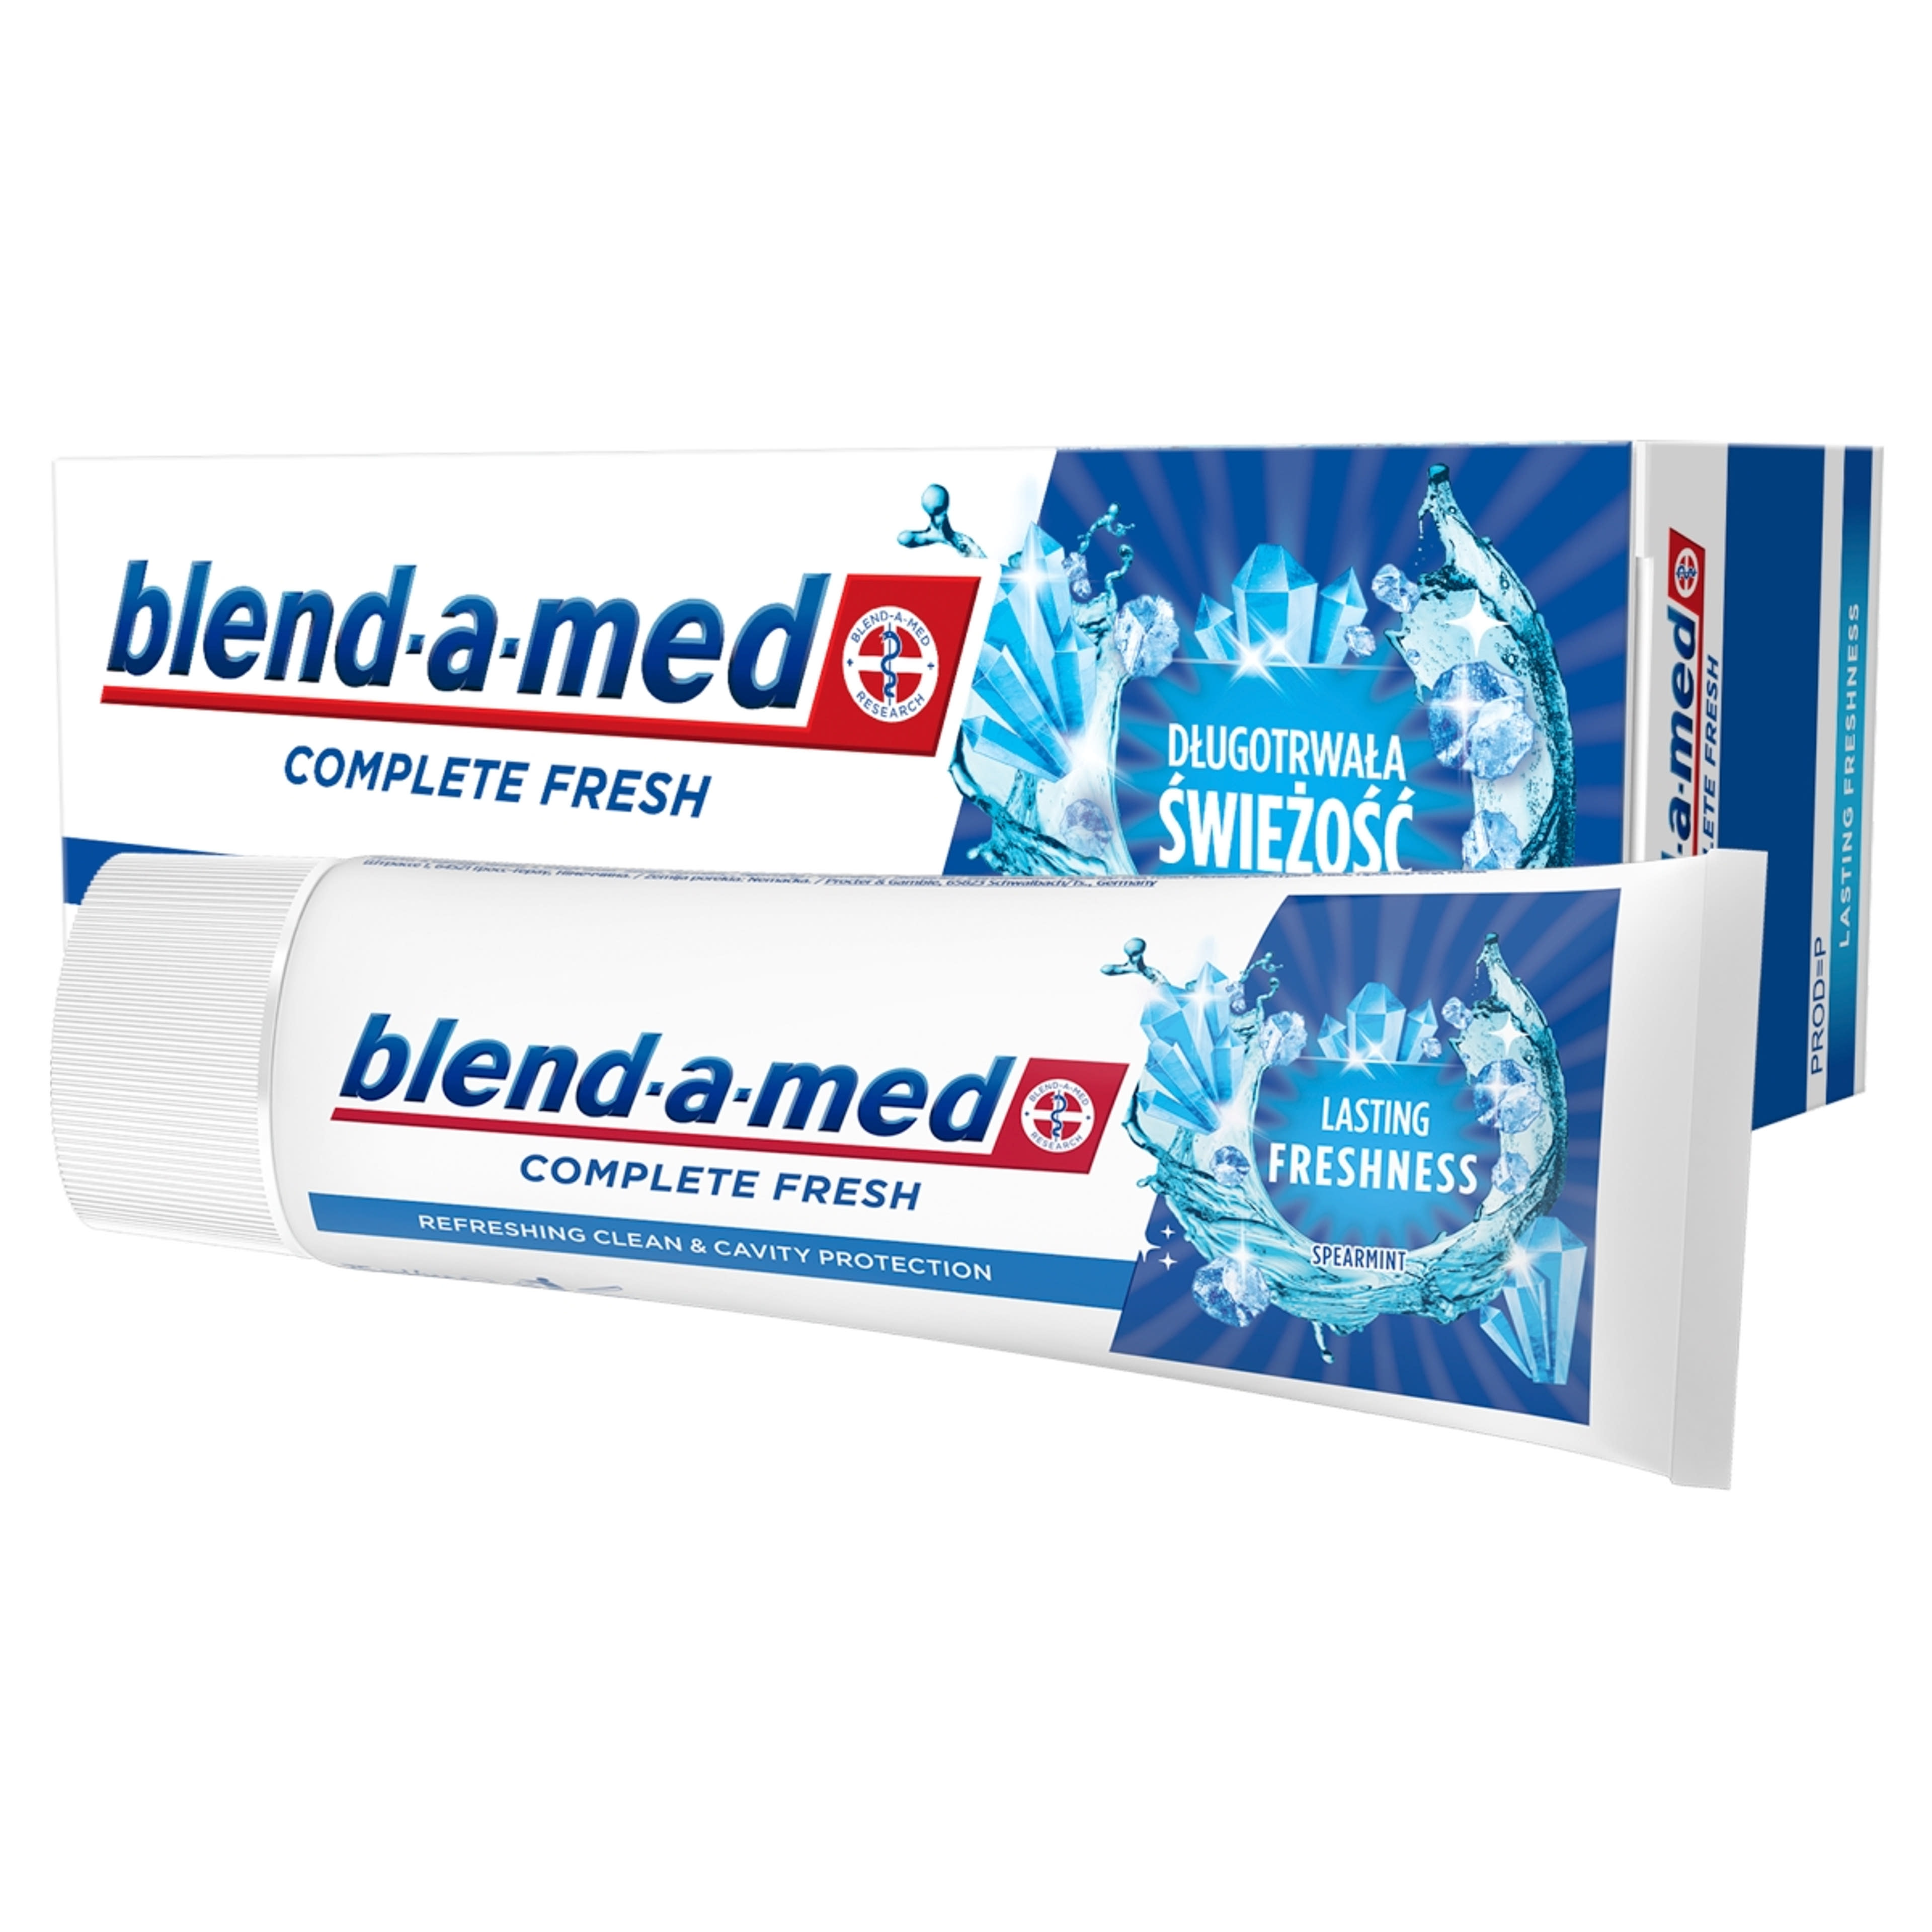 Blend-a-med Complete Fresh Lasting Freshness fogkrém - 75 ml-4